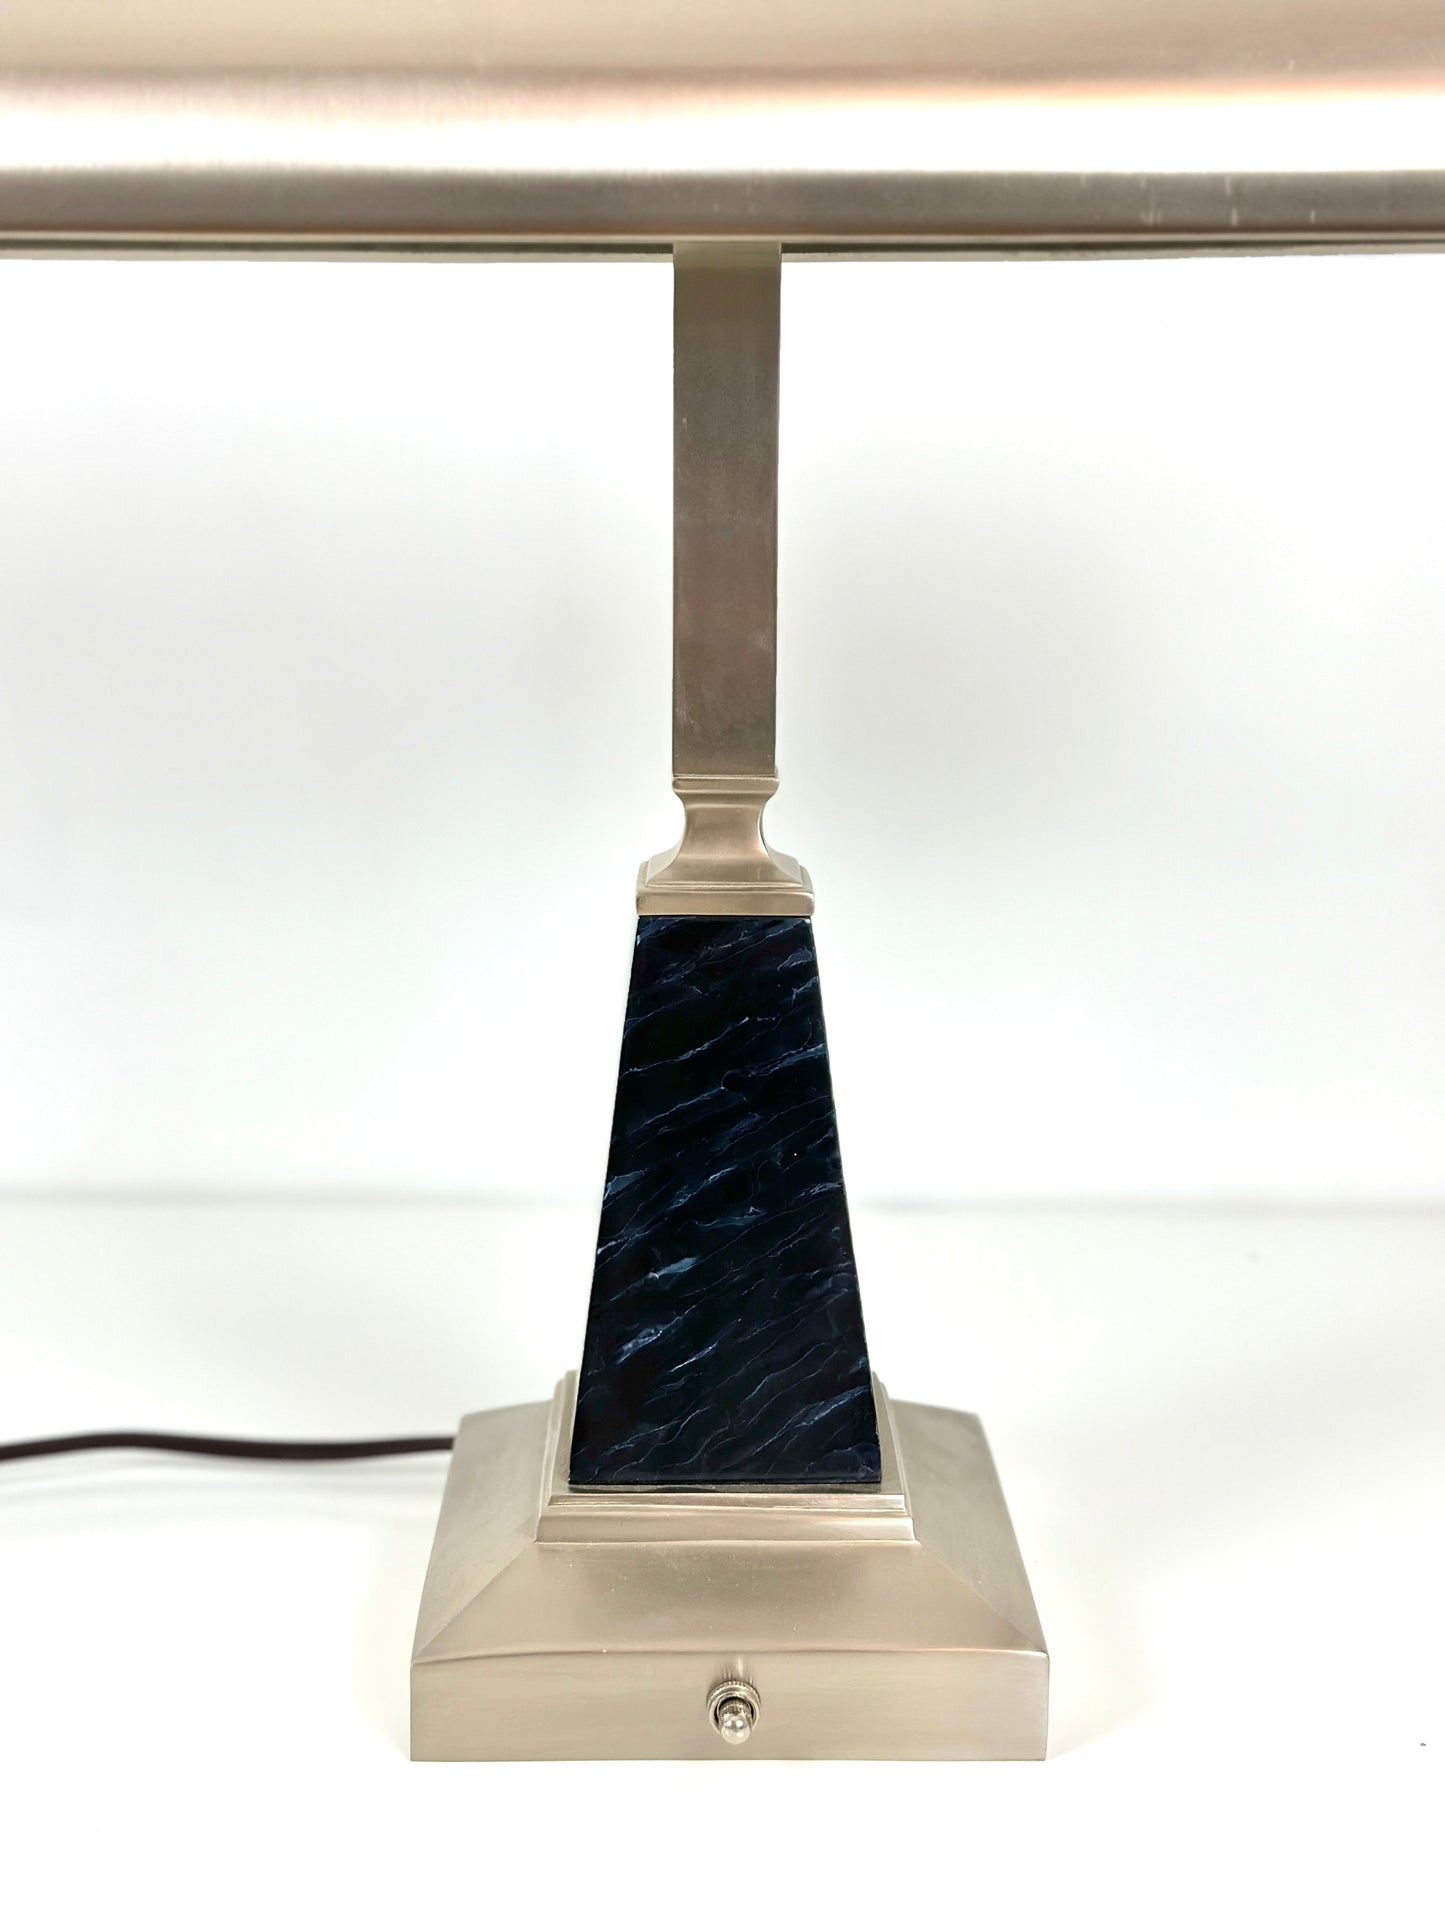 Chrome Table lamp